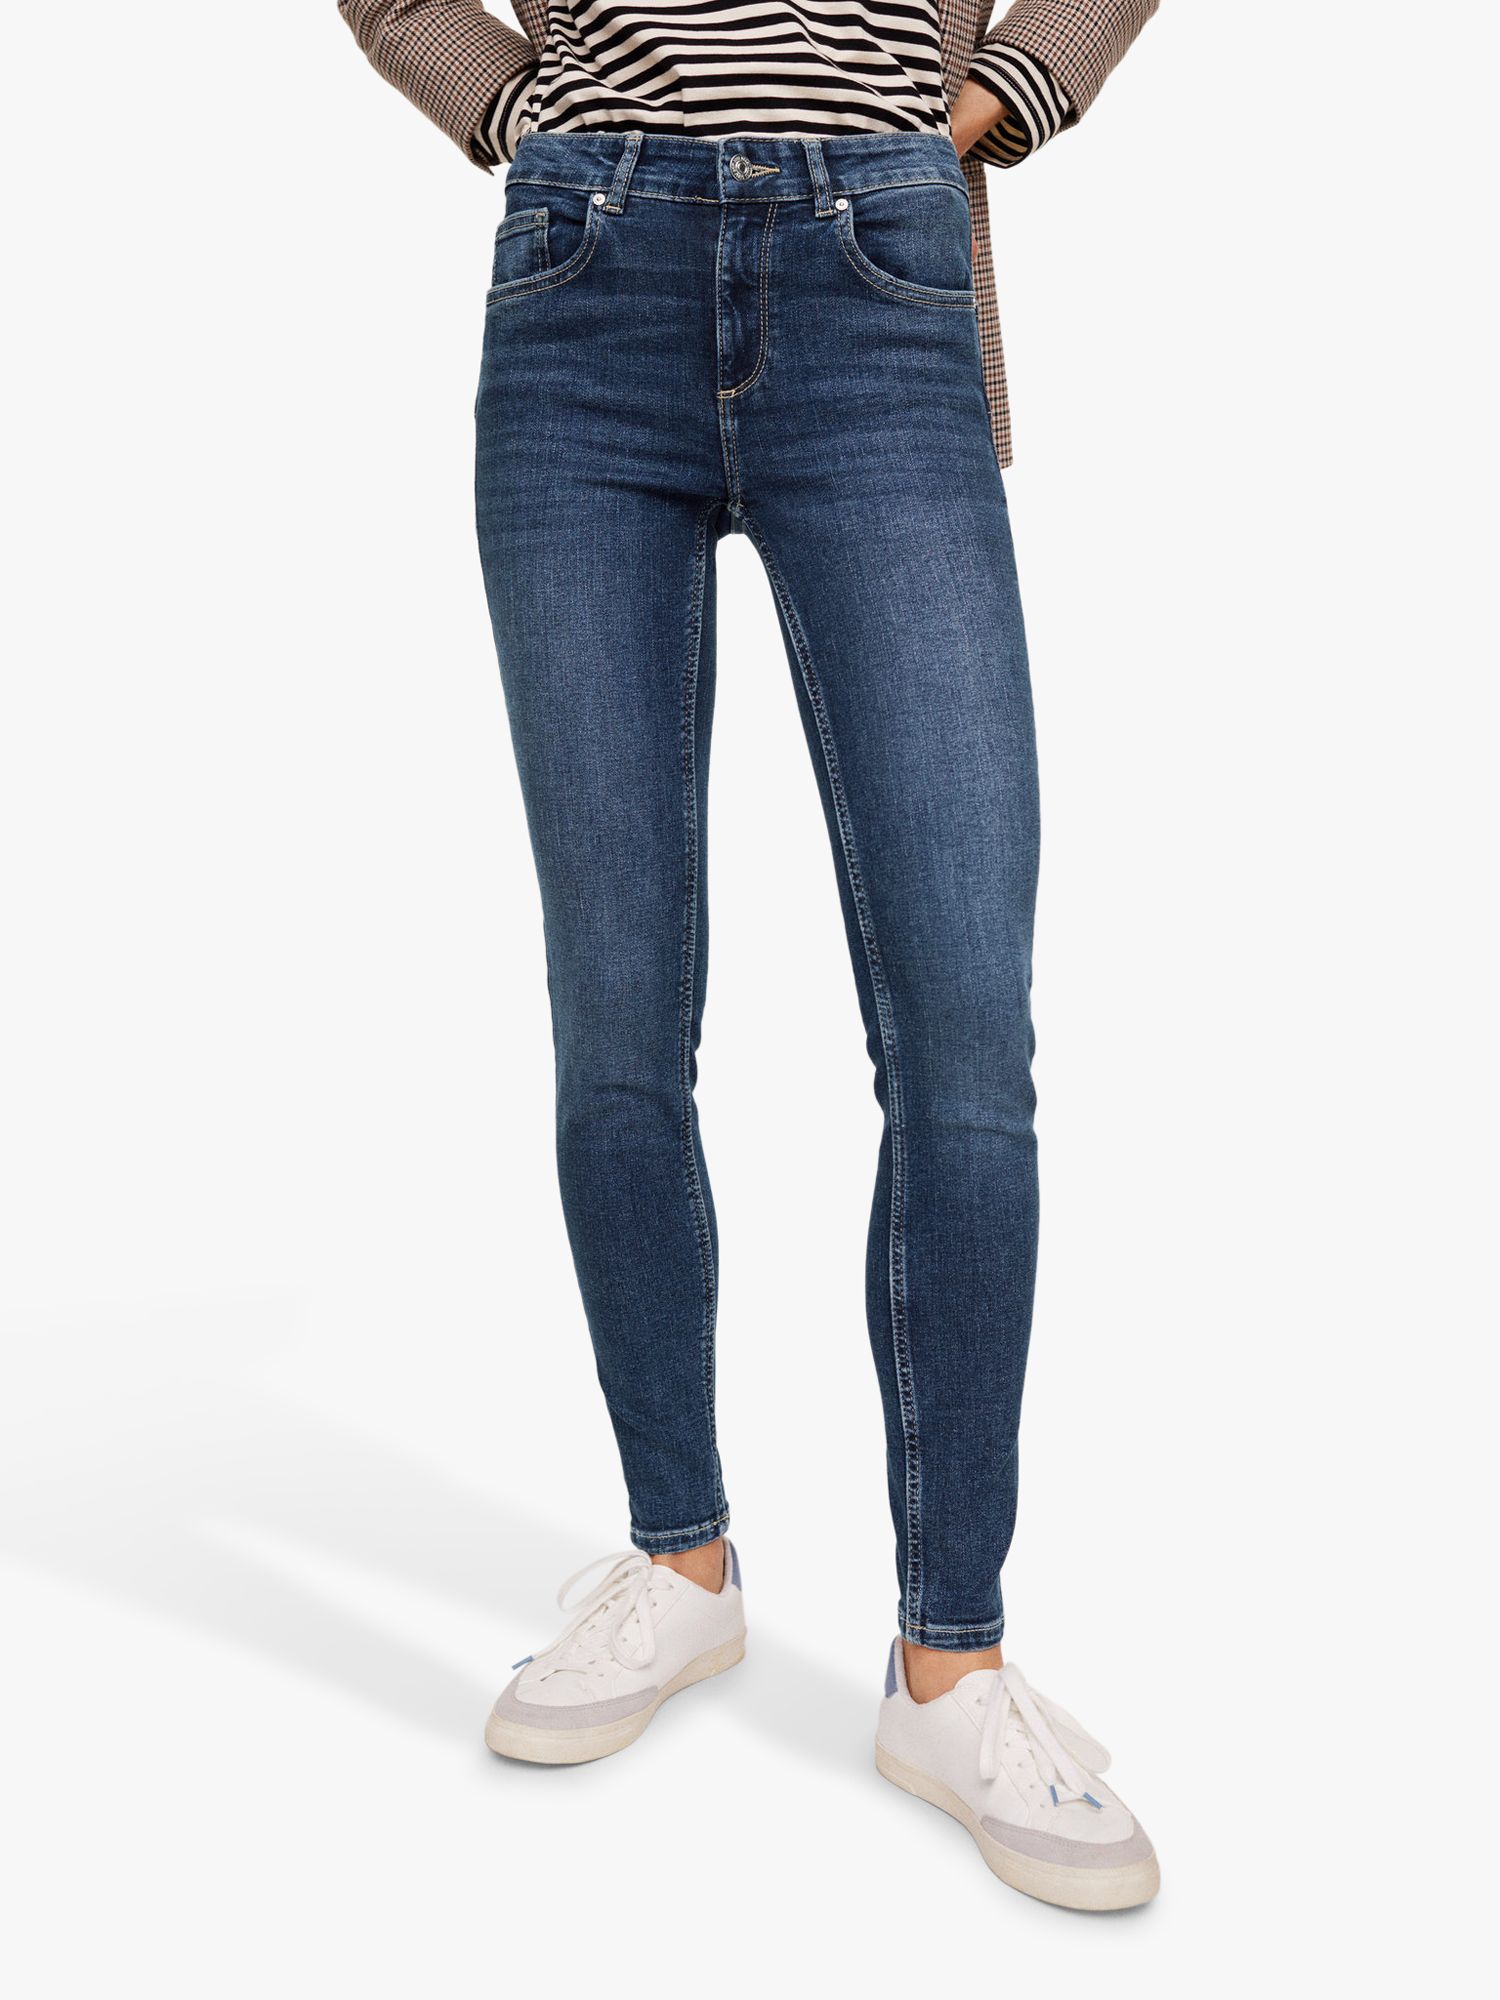 Buy Women's Skinny Tall Jeans Online